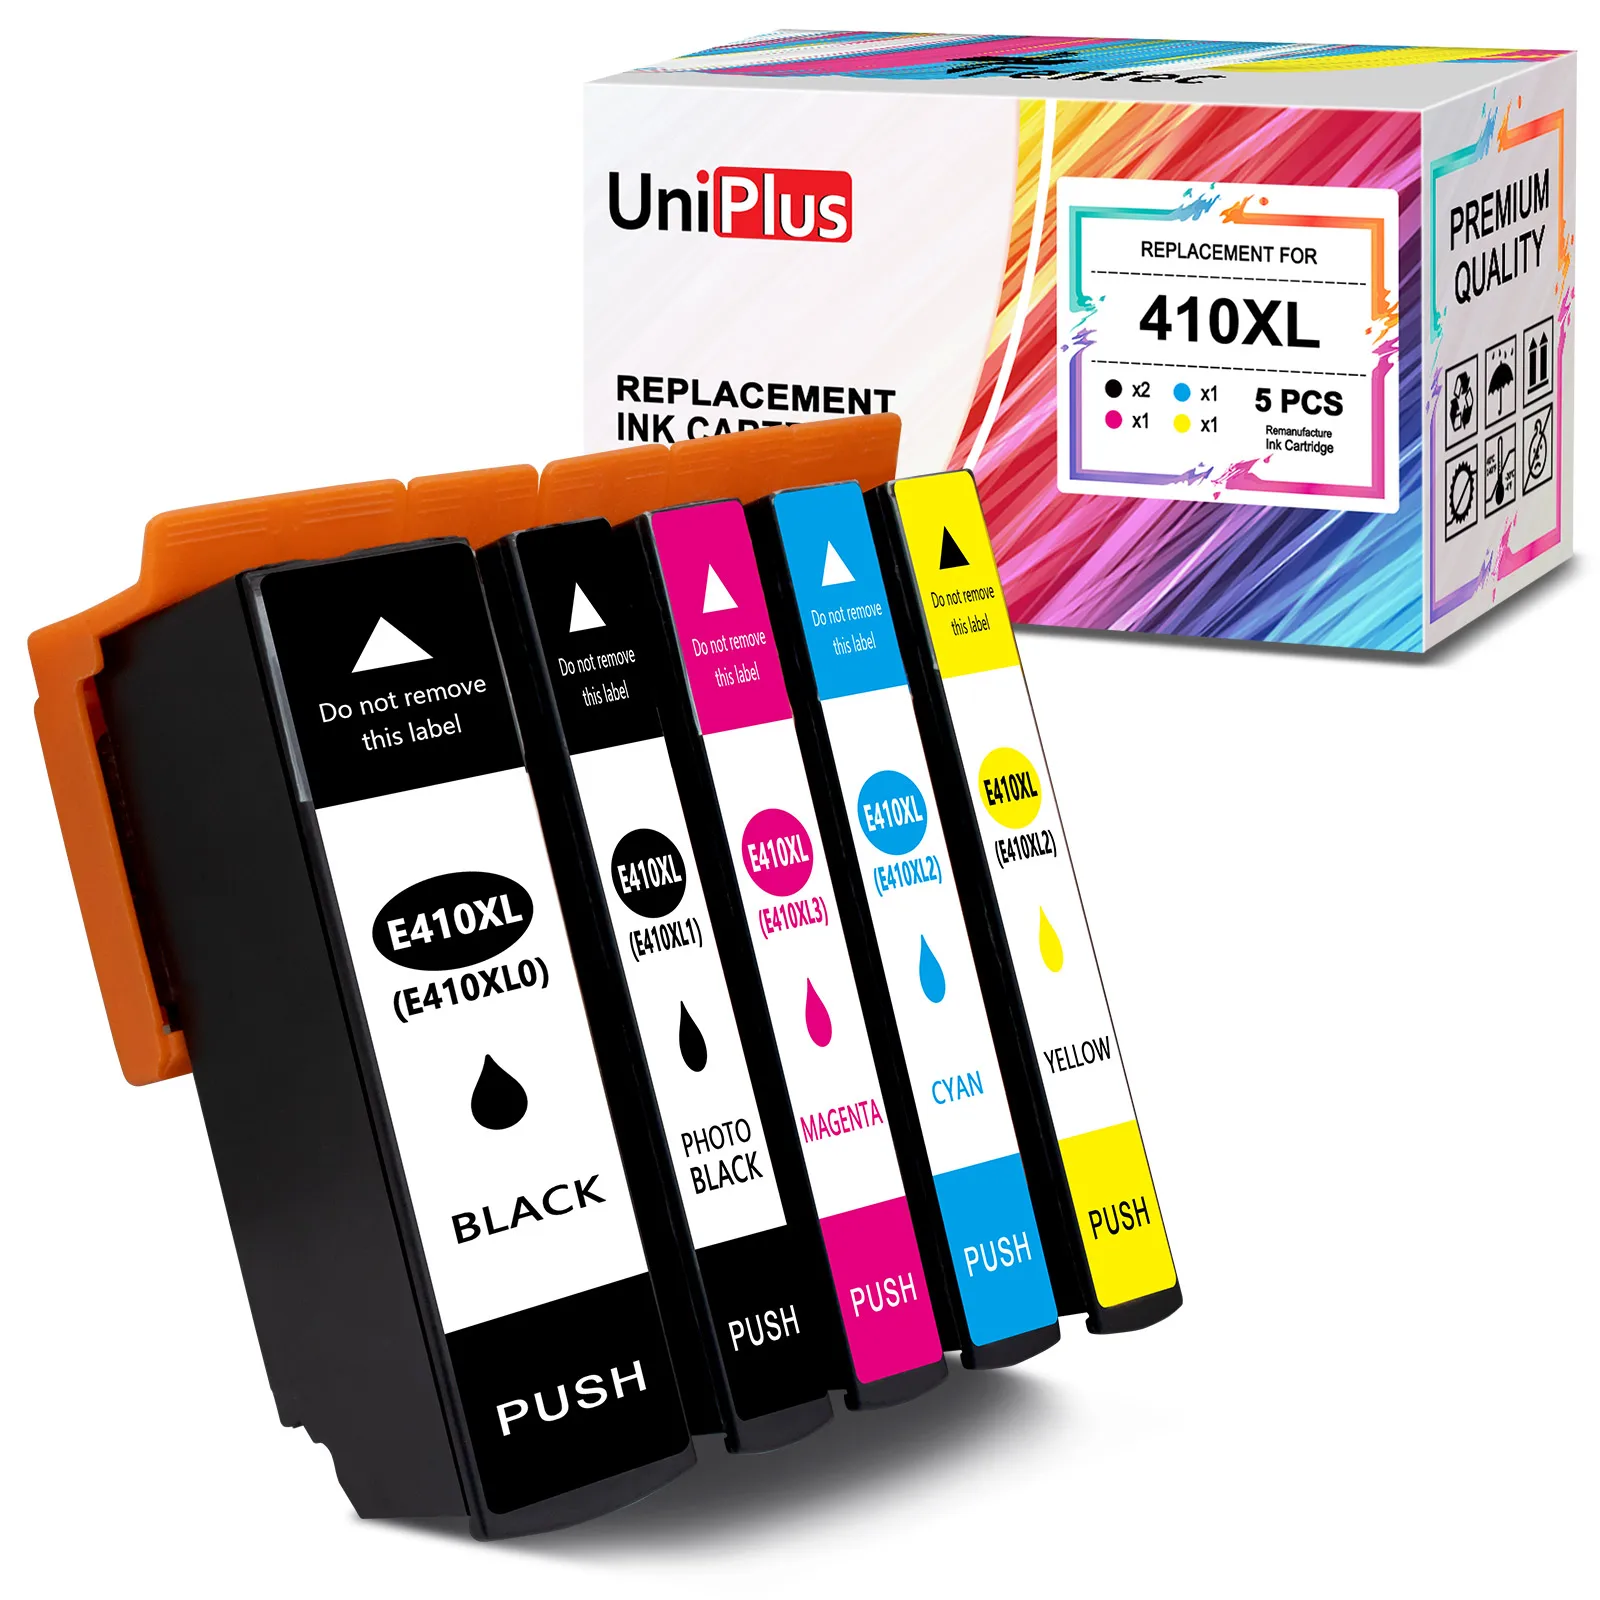 

UniPlus 410XL Compatible Epson Ink Cartridge T410 T410XL for Epson XP630 XP830 XP-530 XP-540 XP-640 XP-900 XP-7100 Printer 410